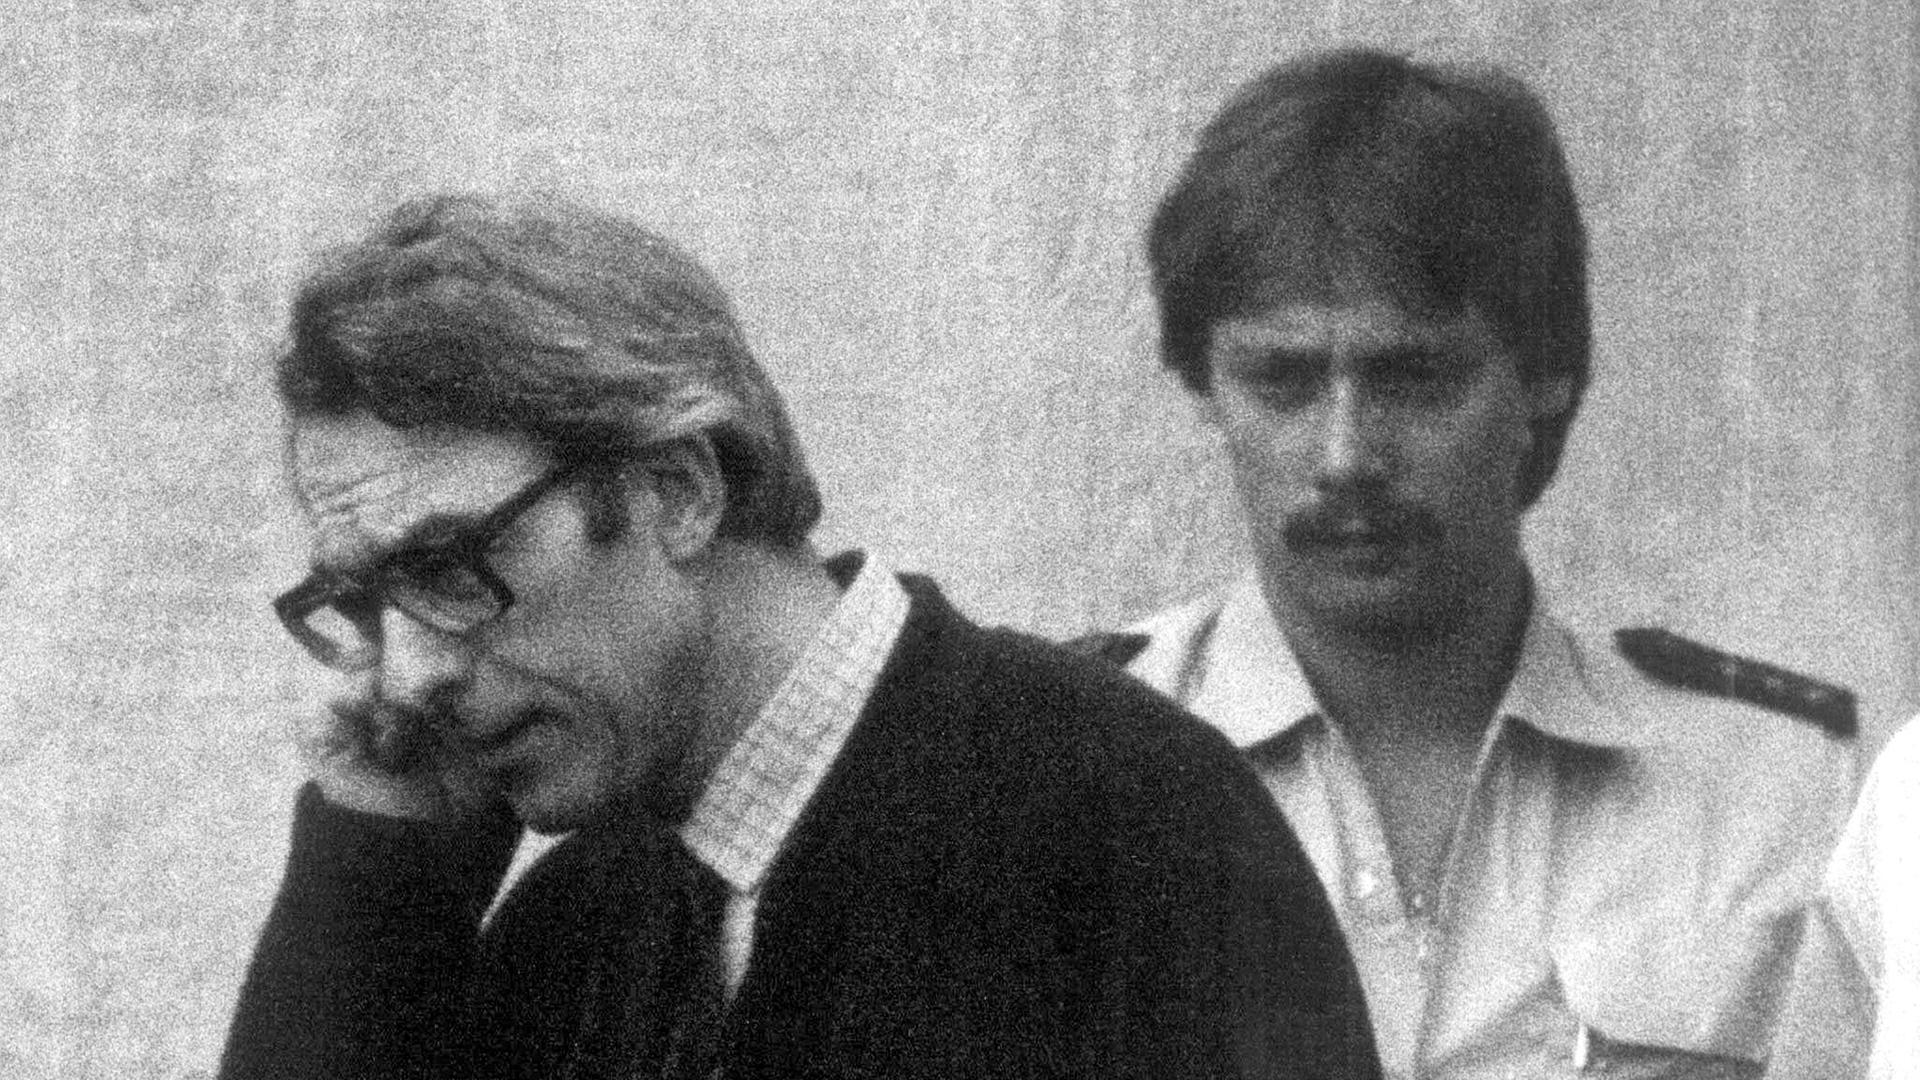 Der ehemalige Rechtsanwalt Manfred Roeder (l) wird am 28.6.1982 in Stuttgart-Stammheim zur Urteilsverkündung geführt: Er wurde als Rädelsführer der rechtsterroristischen "Deutschen Aktionsgruppen" zu 13 Jahren Haft verurteilt.